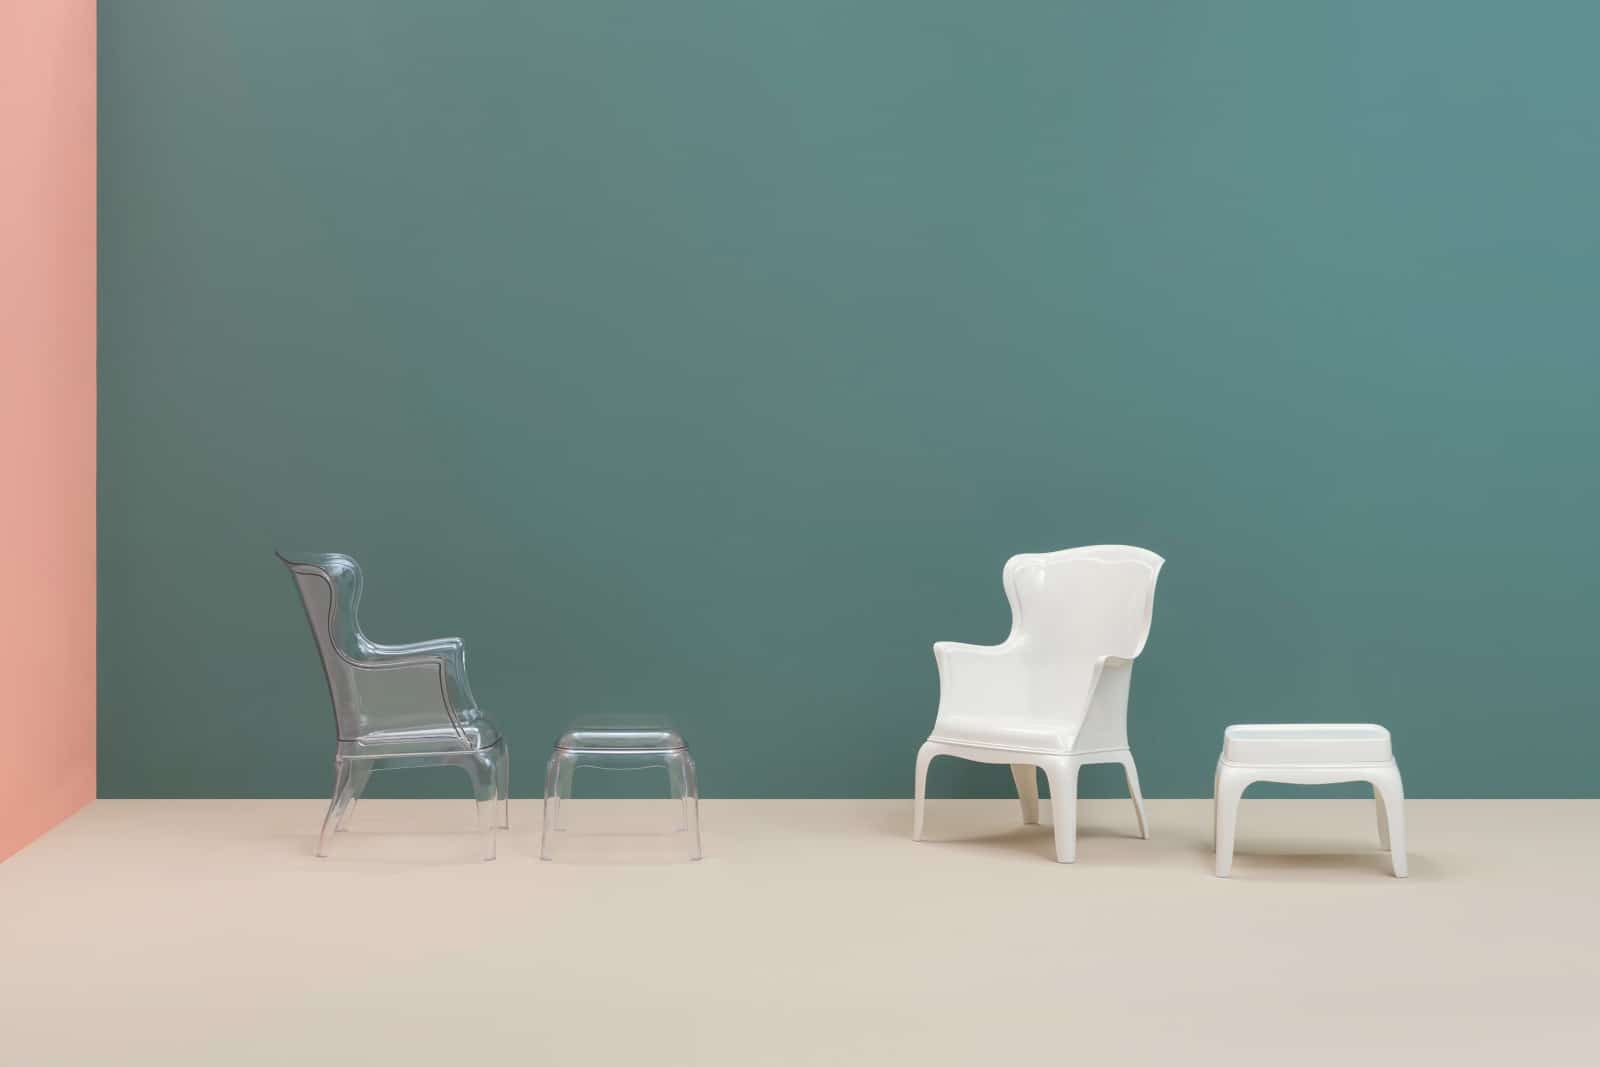 2 sedie e due poggia piedi di colore diversi, uno trasparente e uno bianco